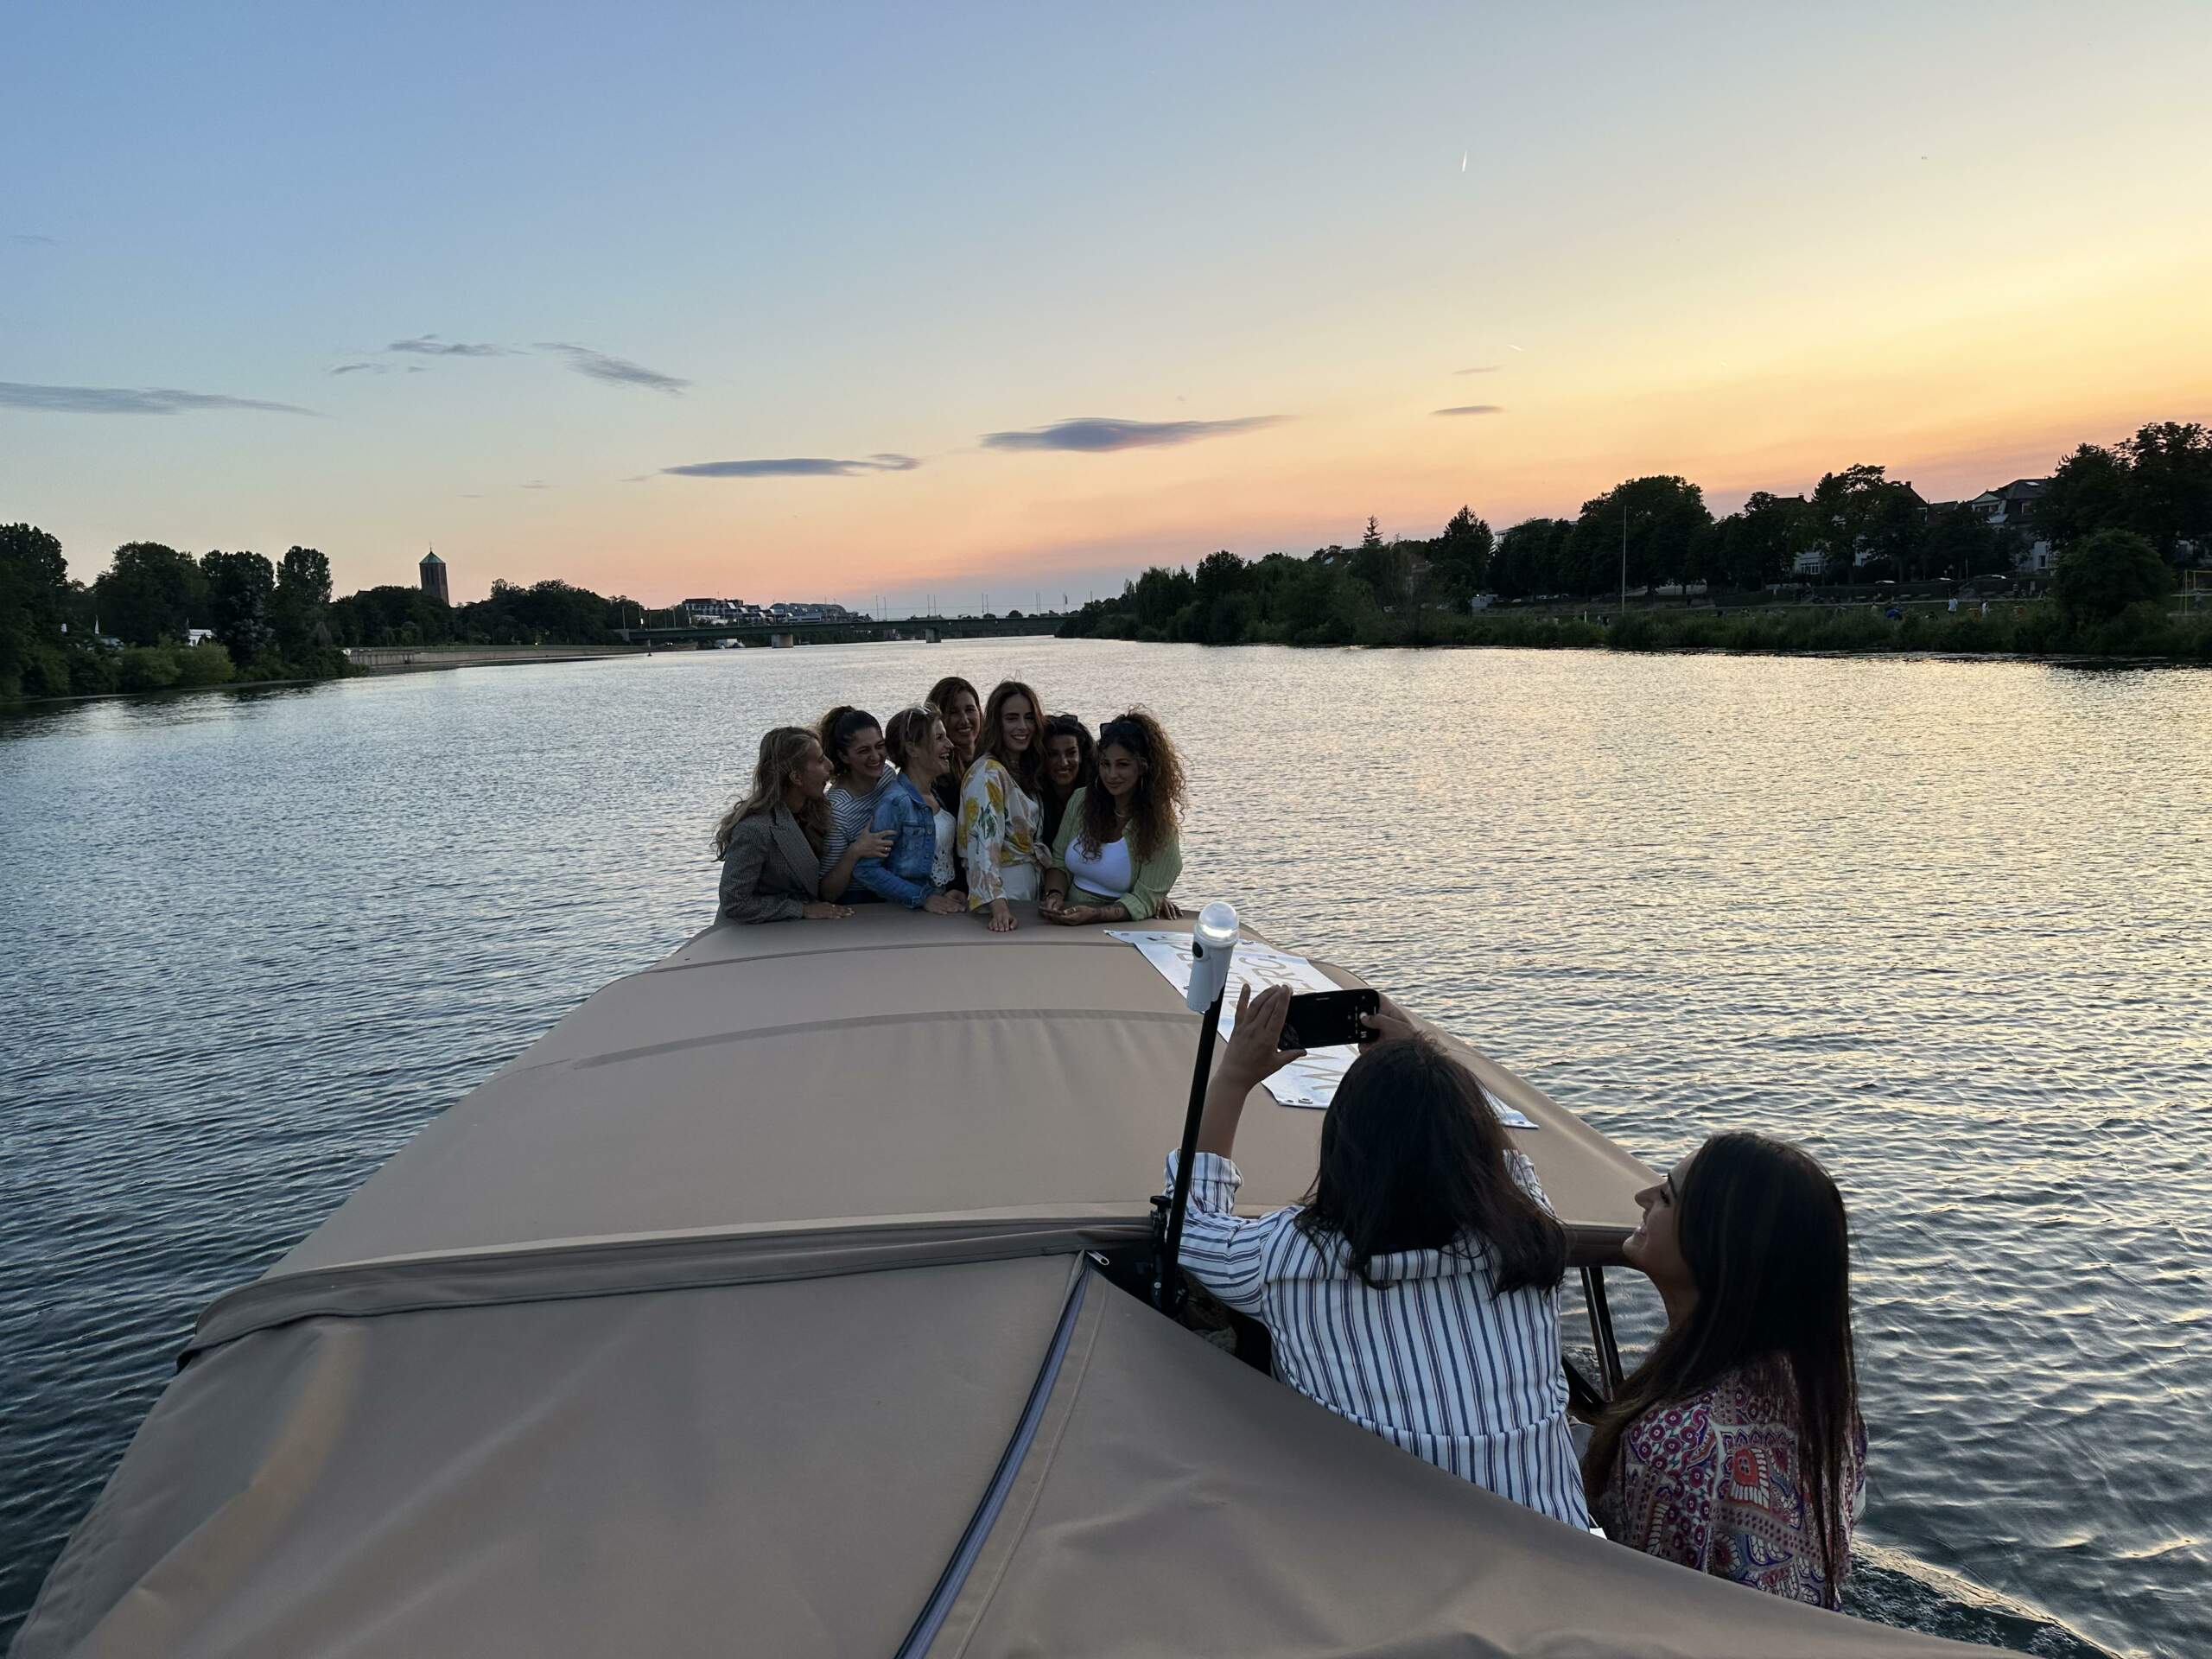 Eine Gruppe von Frauen feiert Geburtstag am Boot des Riverboats, einige stehen am Bug und werden von anderen fotografiert